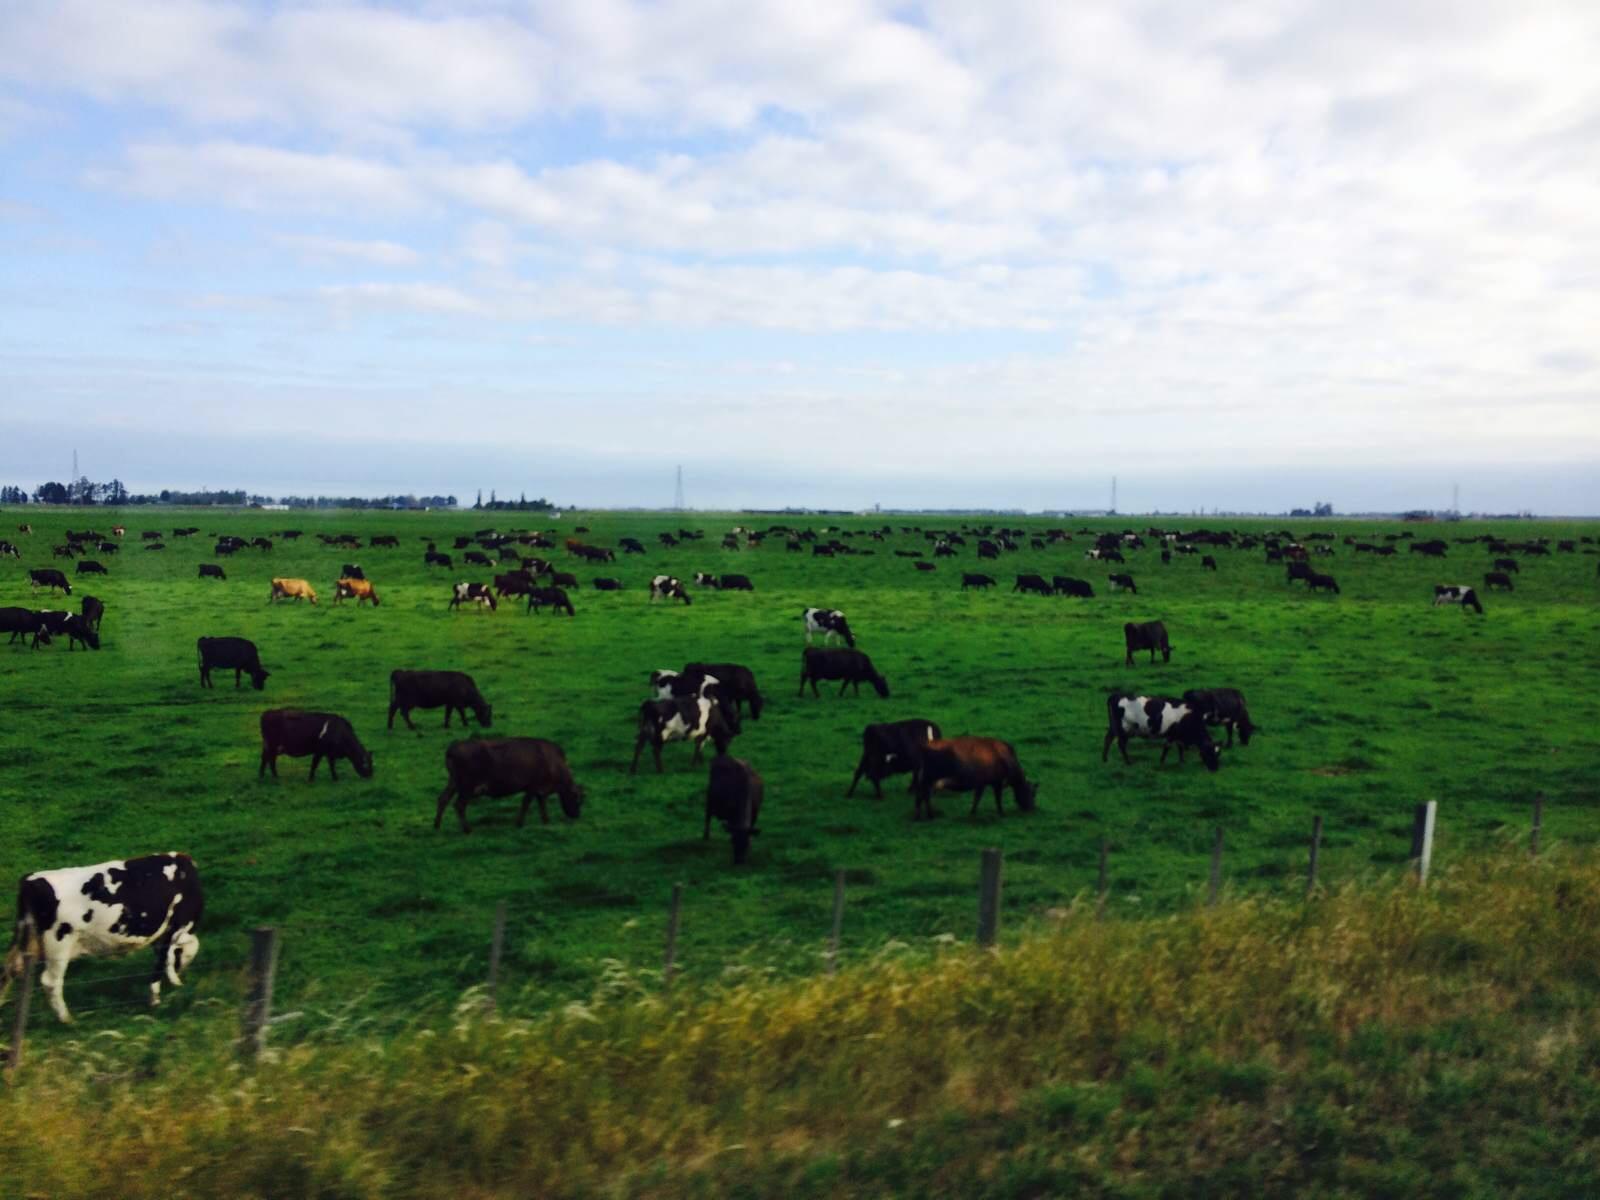 新西兰畜牧业发达是因为人口稀少 一个牧羊人可照顾2000头牛羊,然而